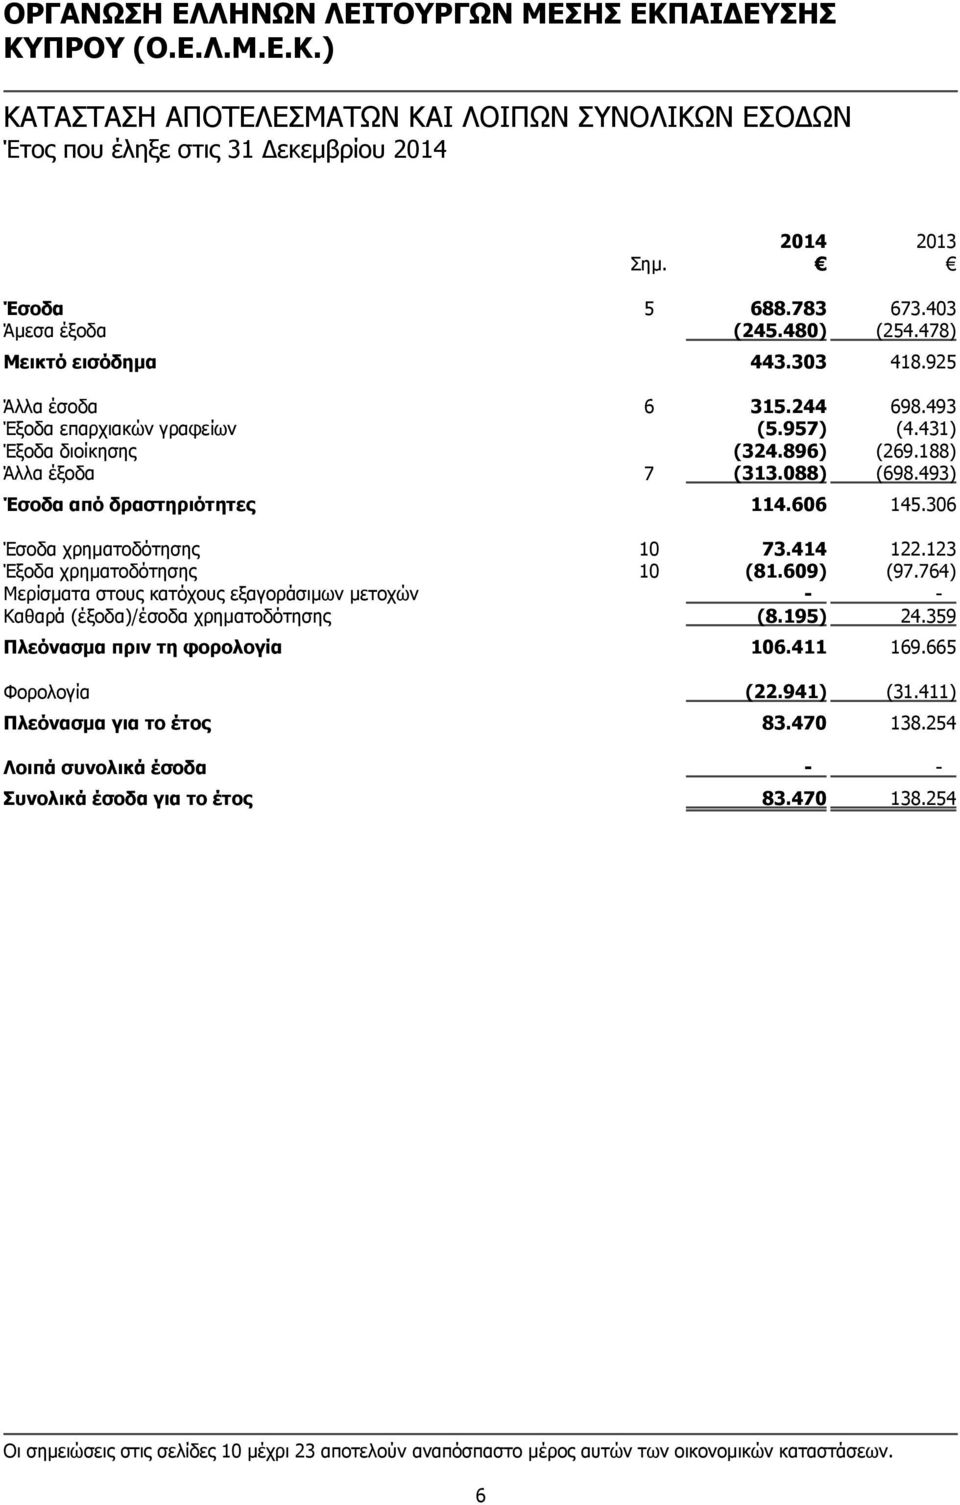 123 Έξοδα χρηματοδότησης 10 (81.609) (97.764) Μερίσματα στους κατόχους εξαγοράσιμων μετοχών - - Καθαρά (έξοδα)/έσοδα χρηματοδότησης (8.195) 24.359 Πλεόνασμα πριν τη φορολογία 106.411 169.